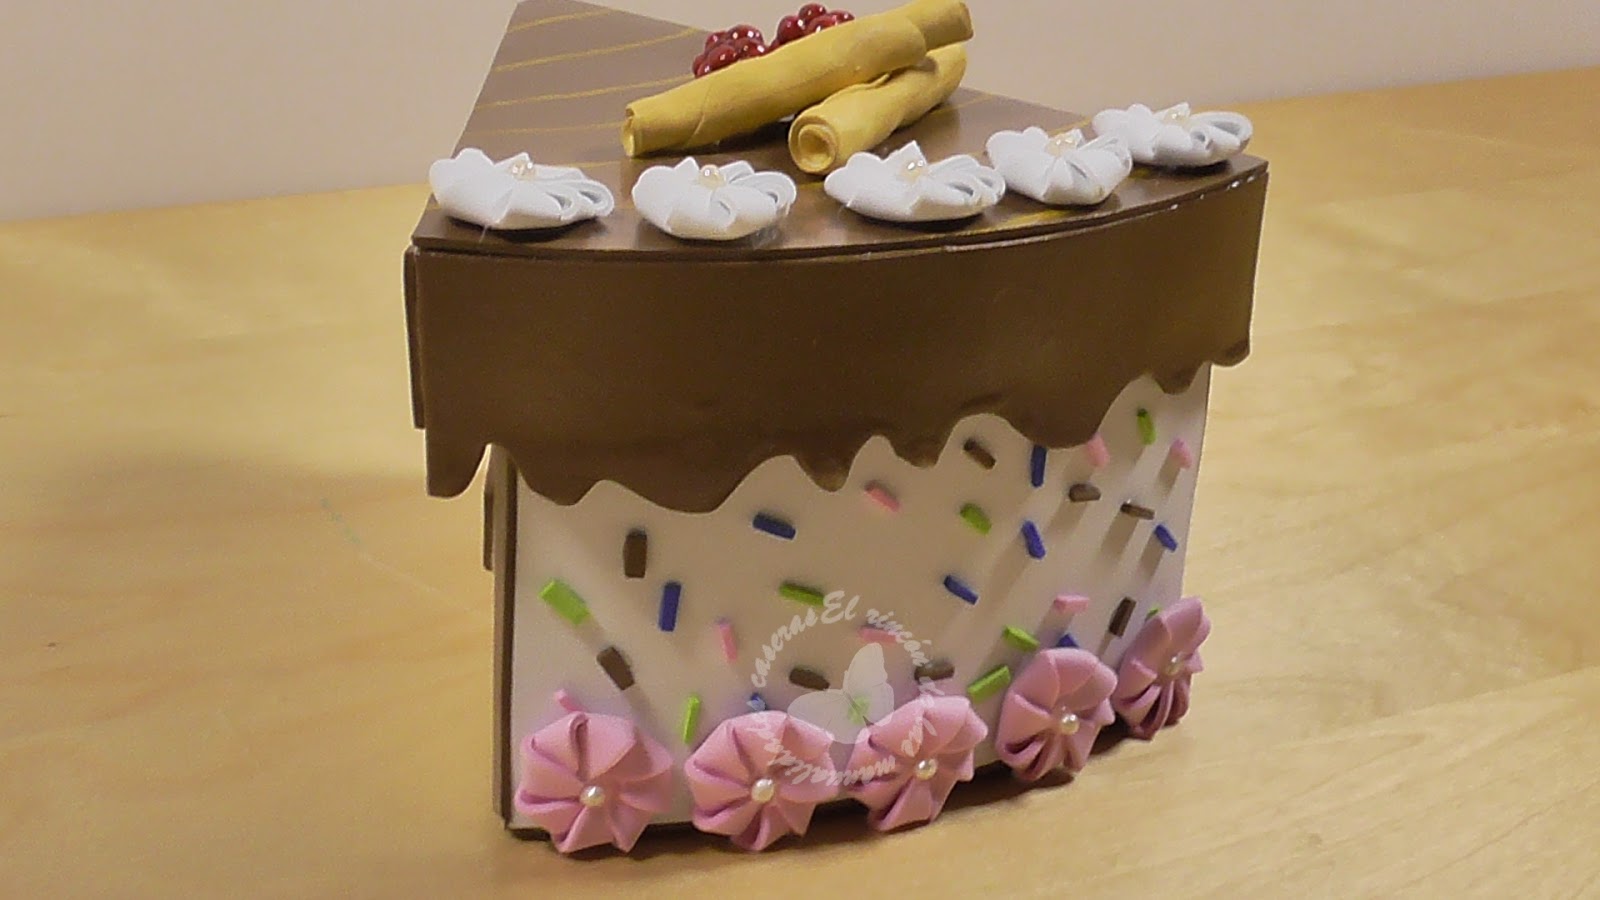 El rincón de las manualidades caseras.: Cómo hacer una caja tarta para  regalo o cumpleaños. Con cartón y foamy - goma eva